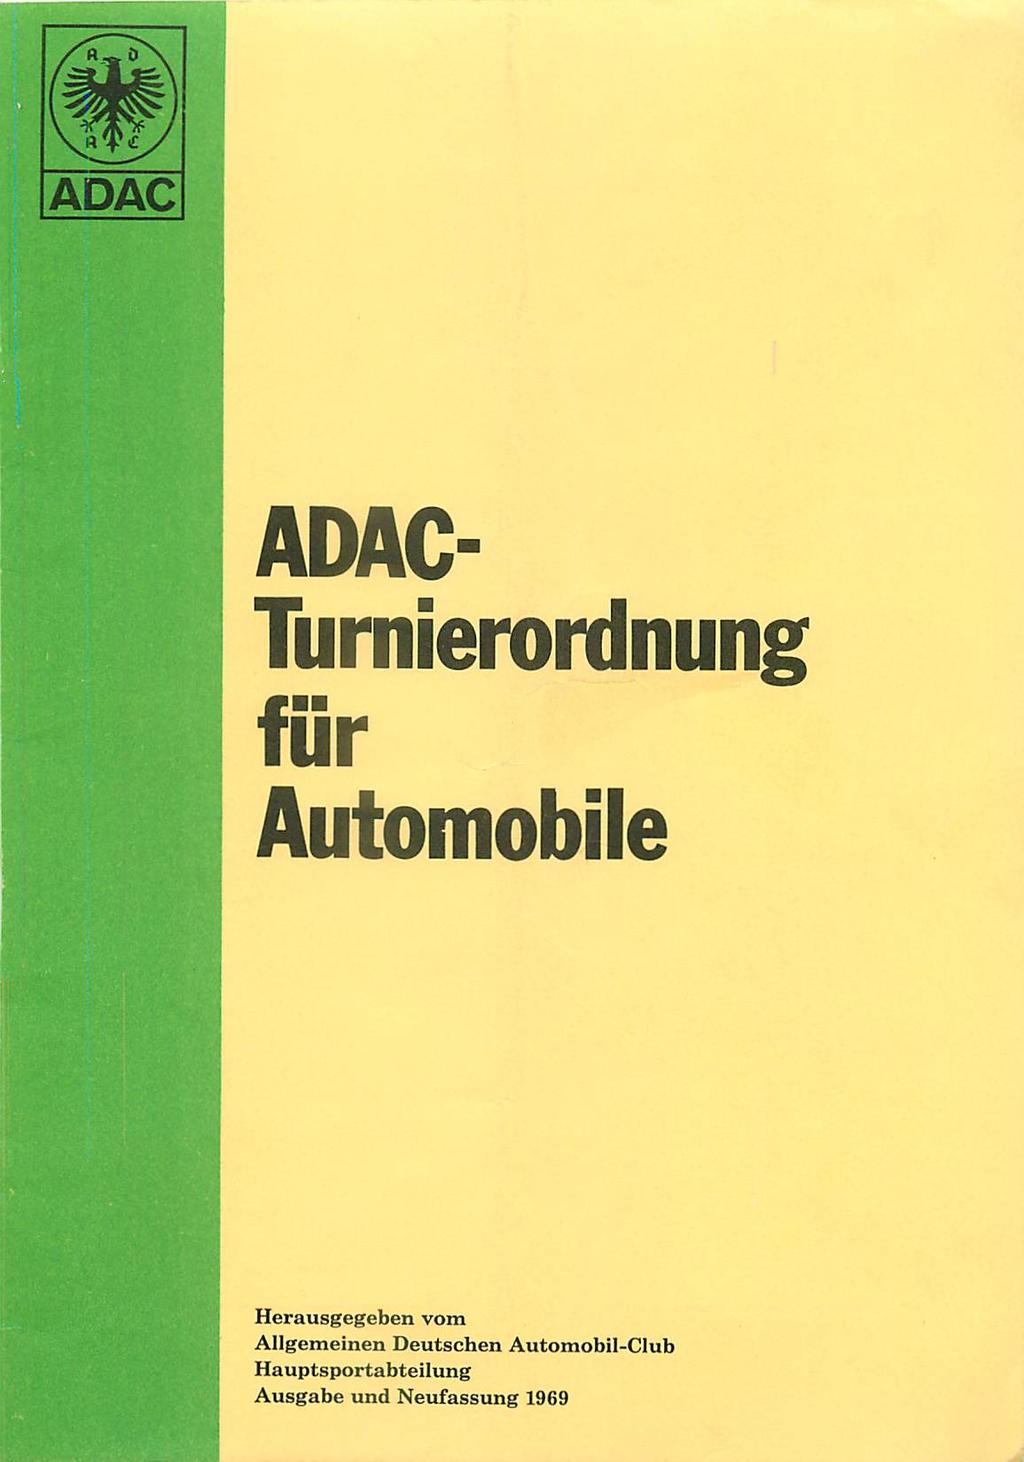 ADAC- Turnierordnung für Automobile Herausgegeben vom Allgemeinen